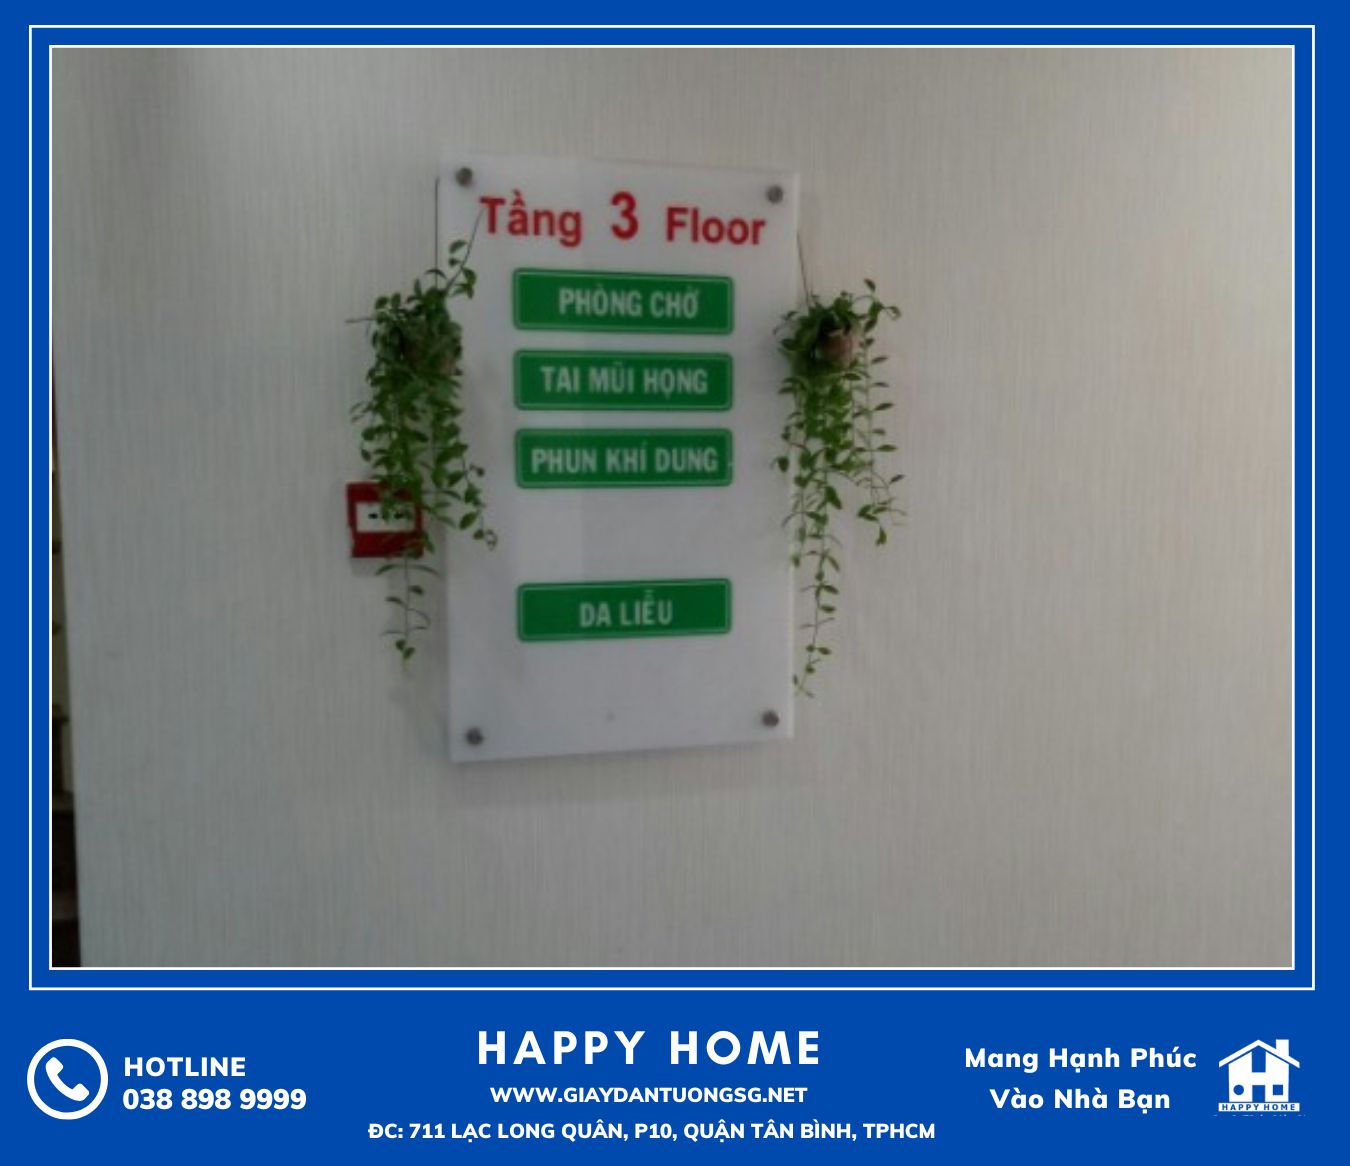 Happy Home được nhiều phòng khám lựa chọn cung cấp và thi công giấy dán tường tại đơn vị